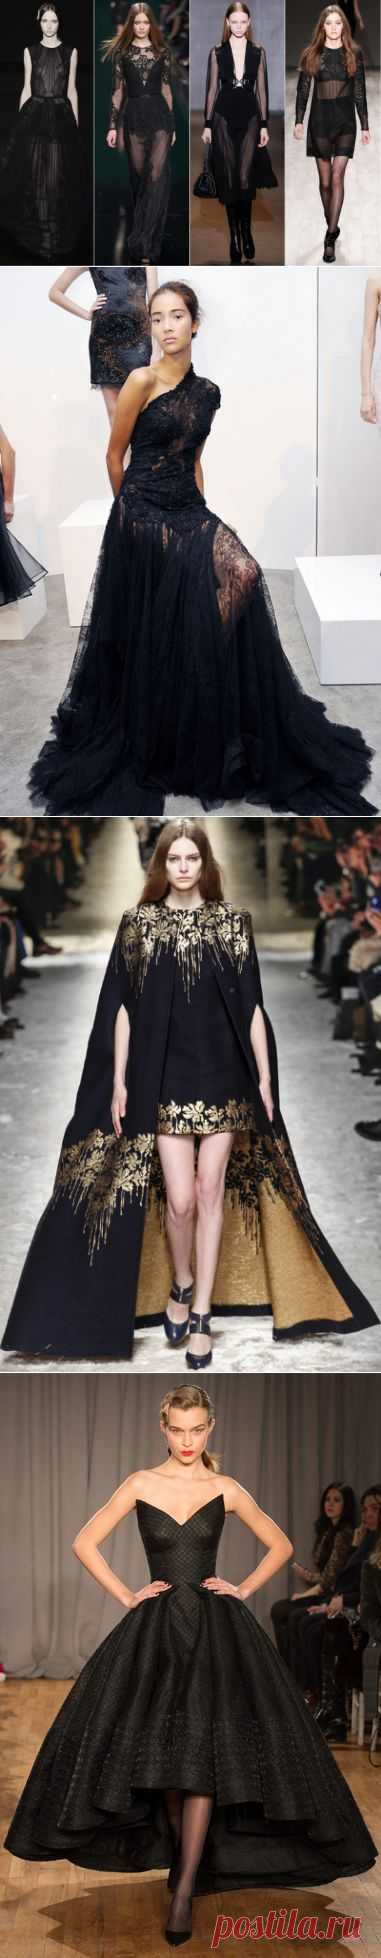 Черные платья 2015 — элегантная роскошь | Мода